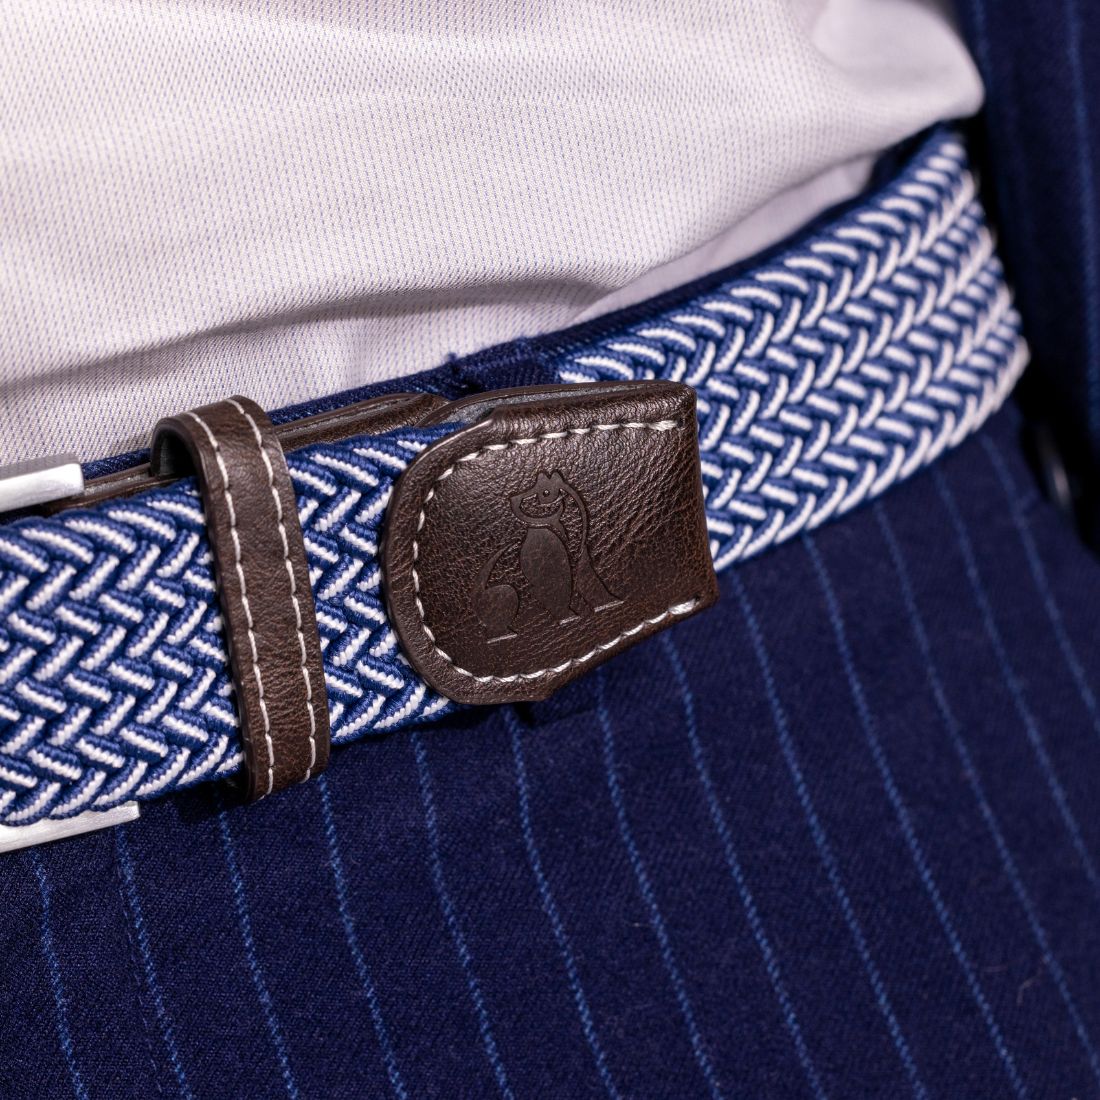 Woven Belt - Navy Fine Weave